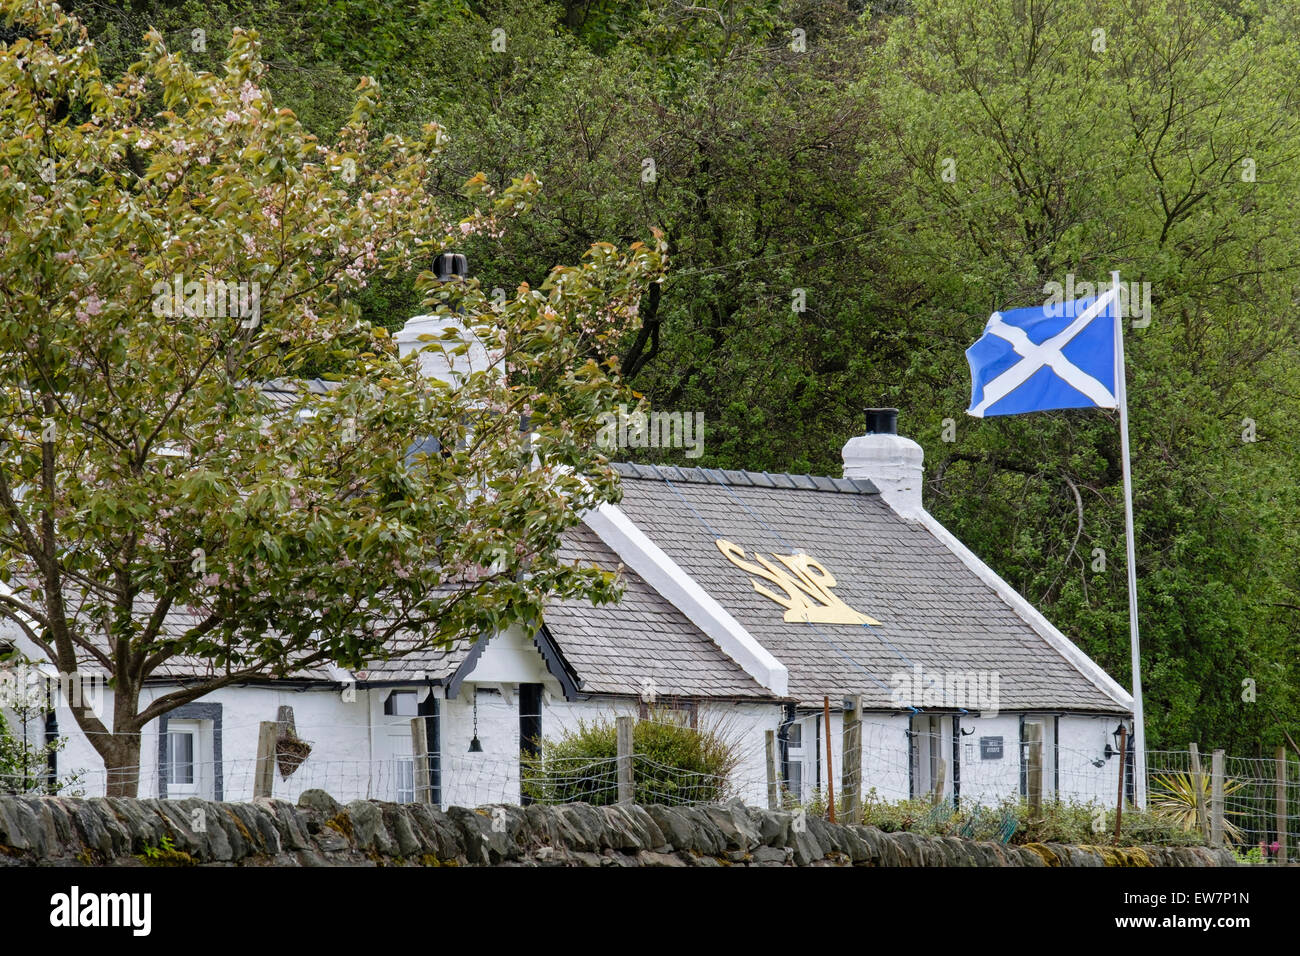 Casa rural apoyando el Partido Nacional Escocés con SNP en el techo y enarbolan la bandera. Lochranza, la Isla de Arran, Escocia, Reino Unido Foto de stock